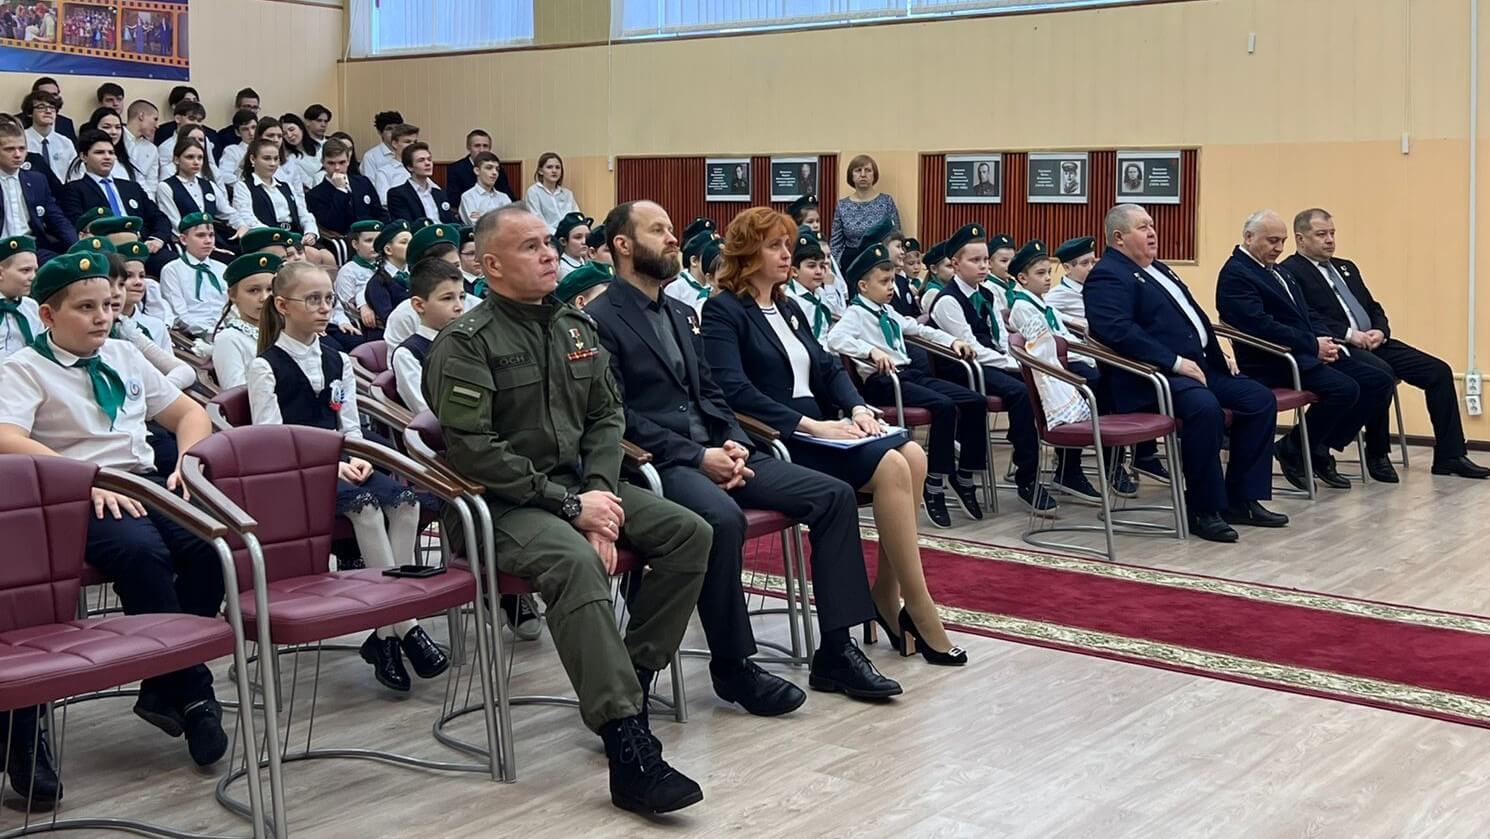 Зал со зрителями во время мероприятия с участием Героев России. 